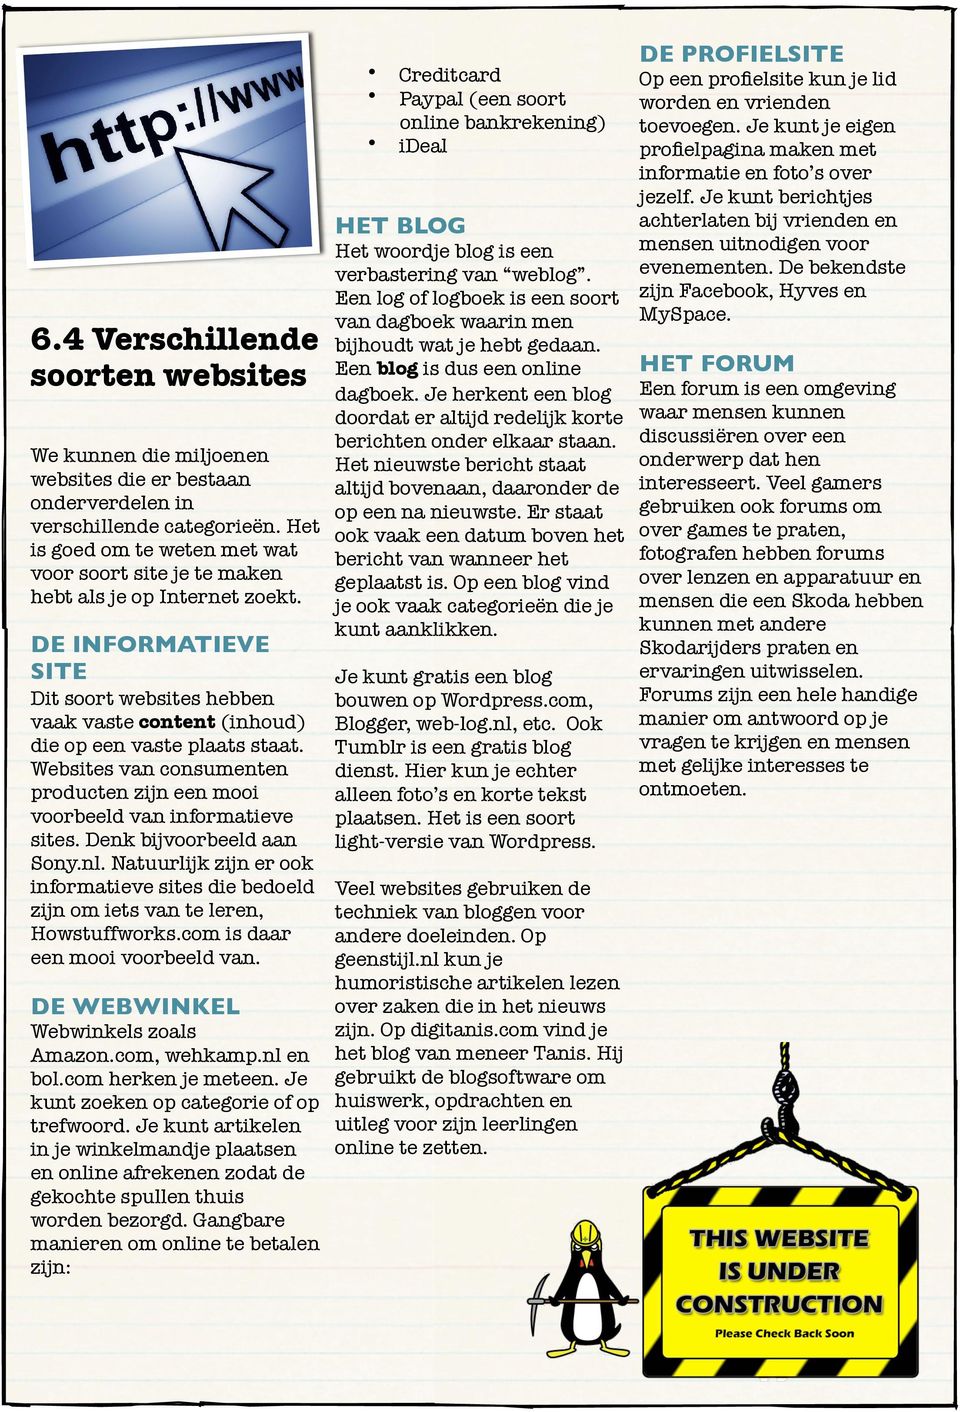 Websites van consumenten producten zijn een mooi voorbeeld van informatieve sites. Denk bijvoorbeeld aan Sony.nl.